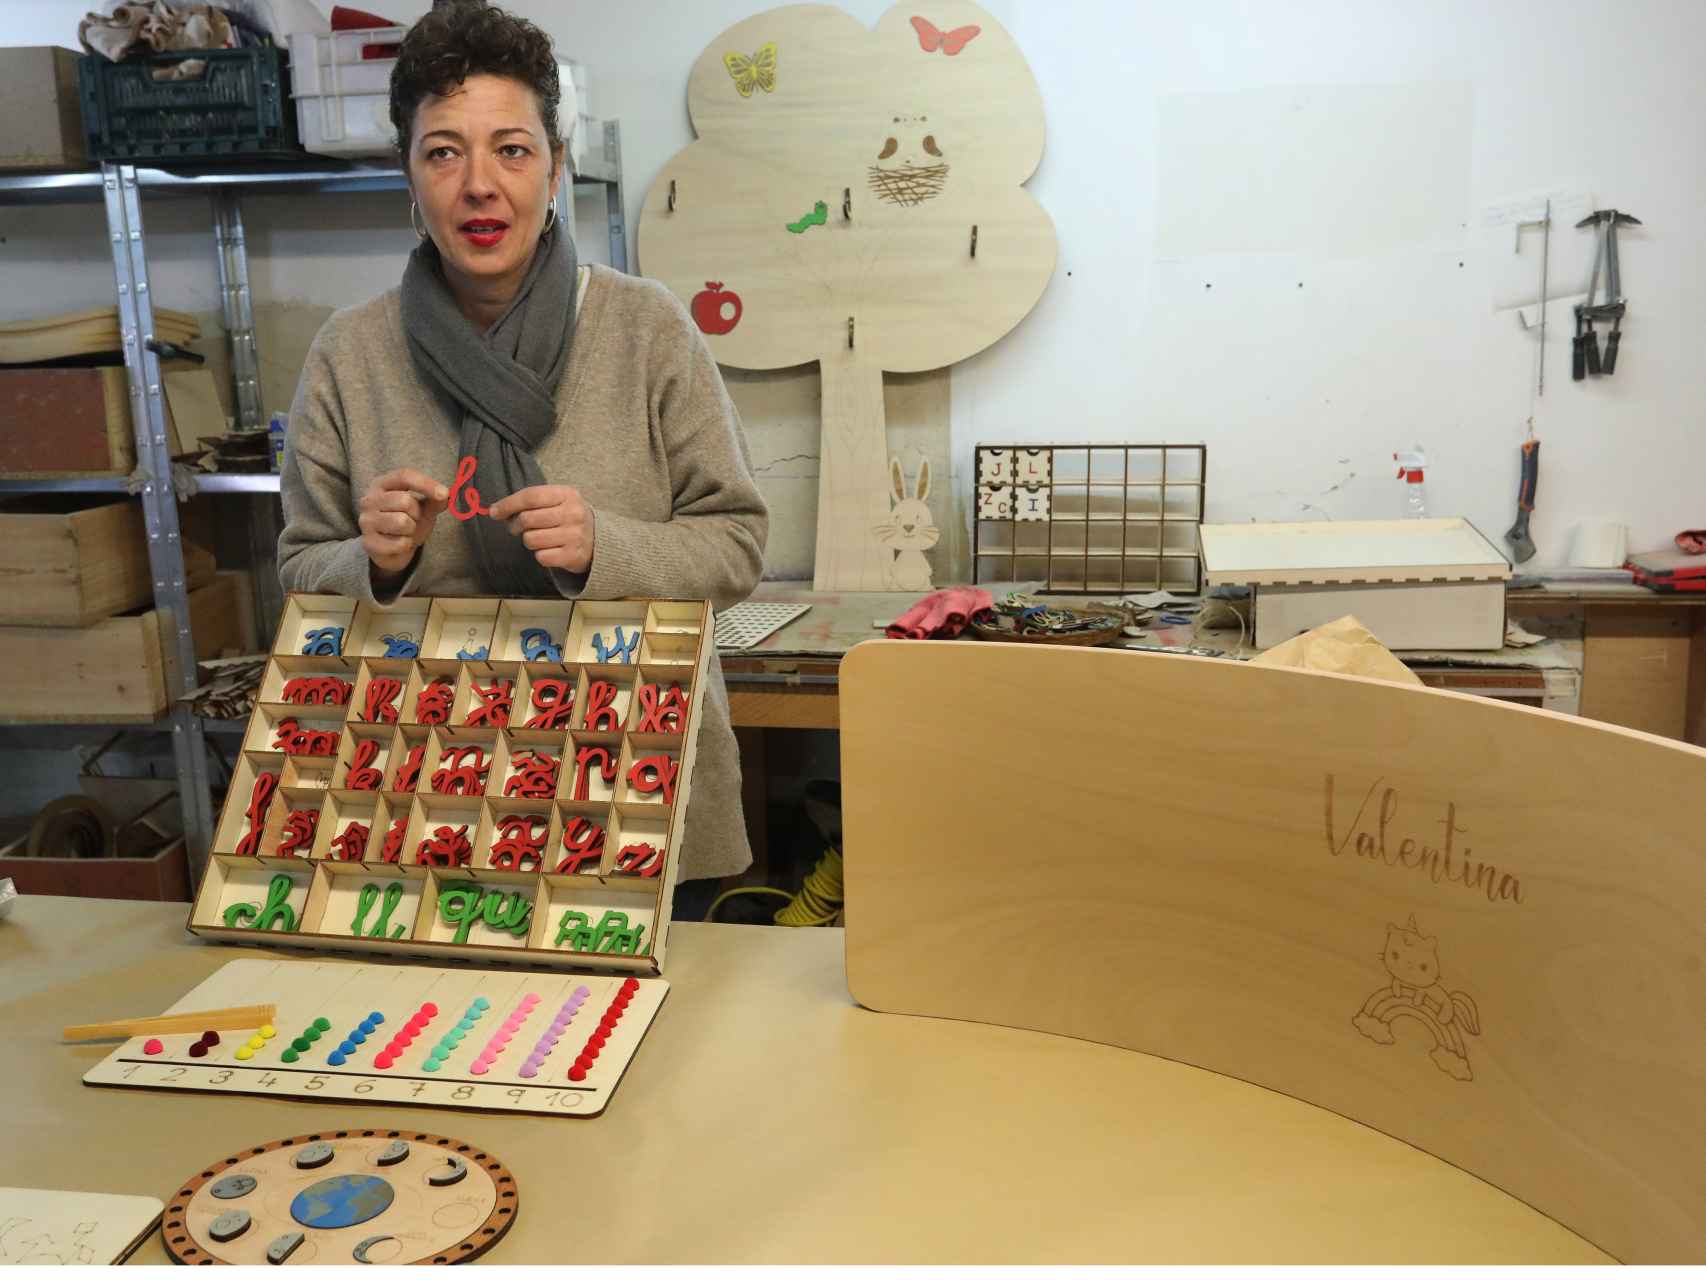 La propietaria de la empresa, Lorena Yáñez, crea juguetes educativos en su taller de Paredes de nava